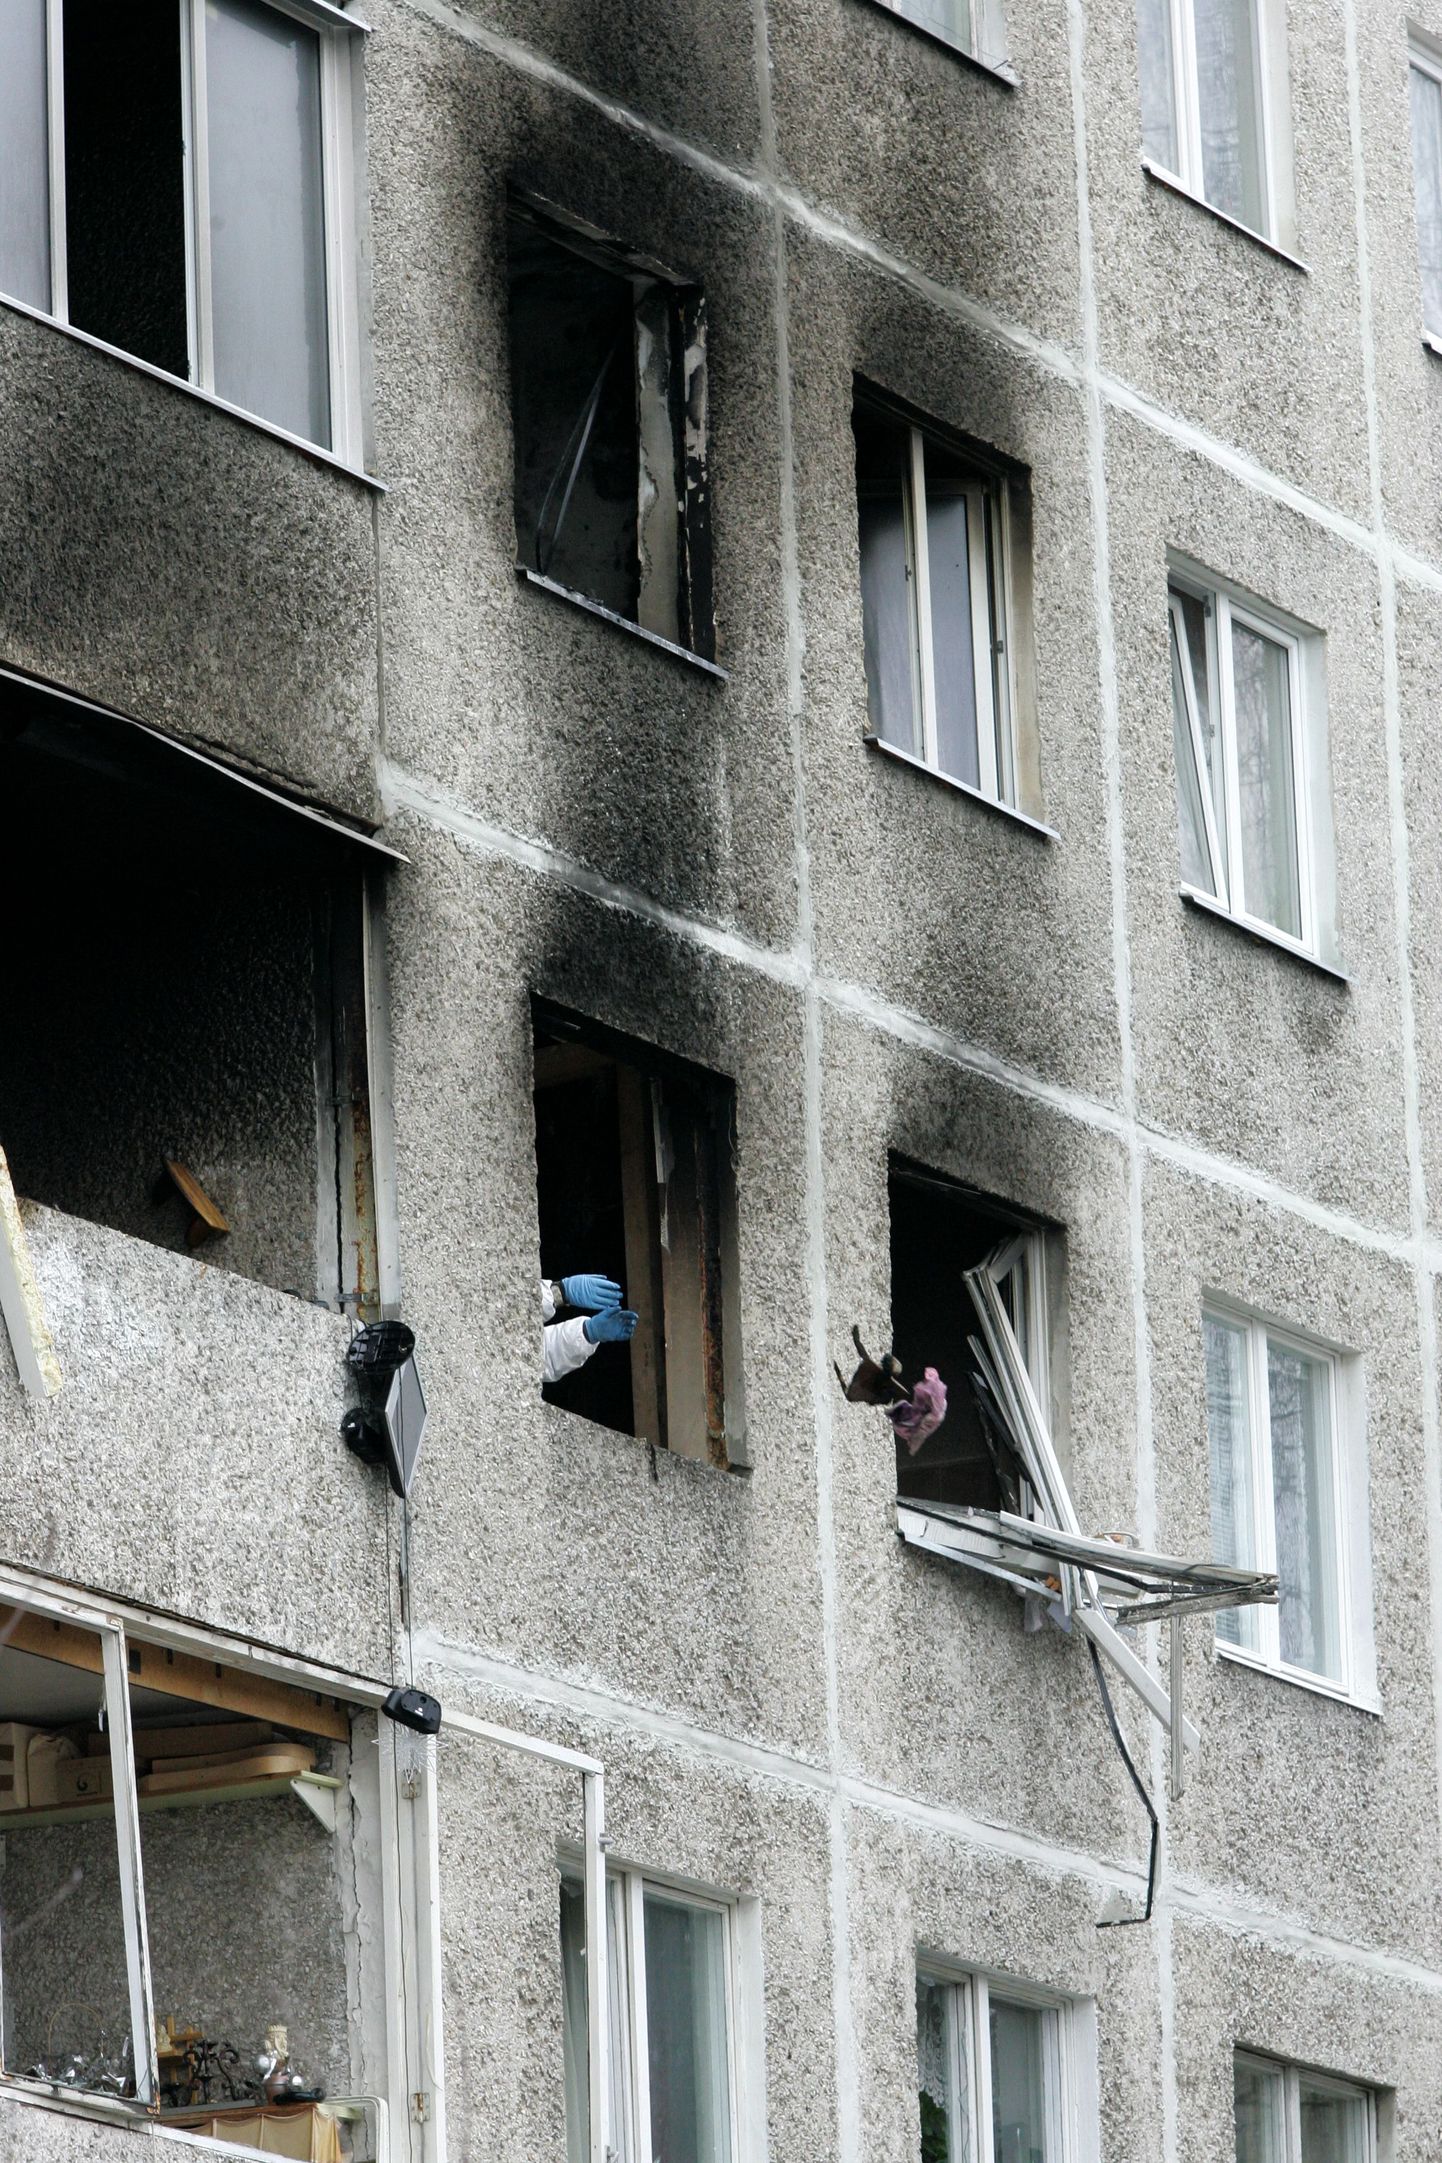 Дом на улице Кульднока, в котором произошел взрыв.